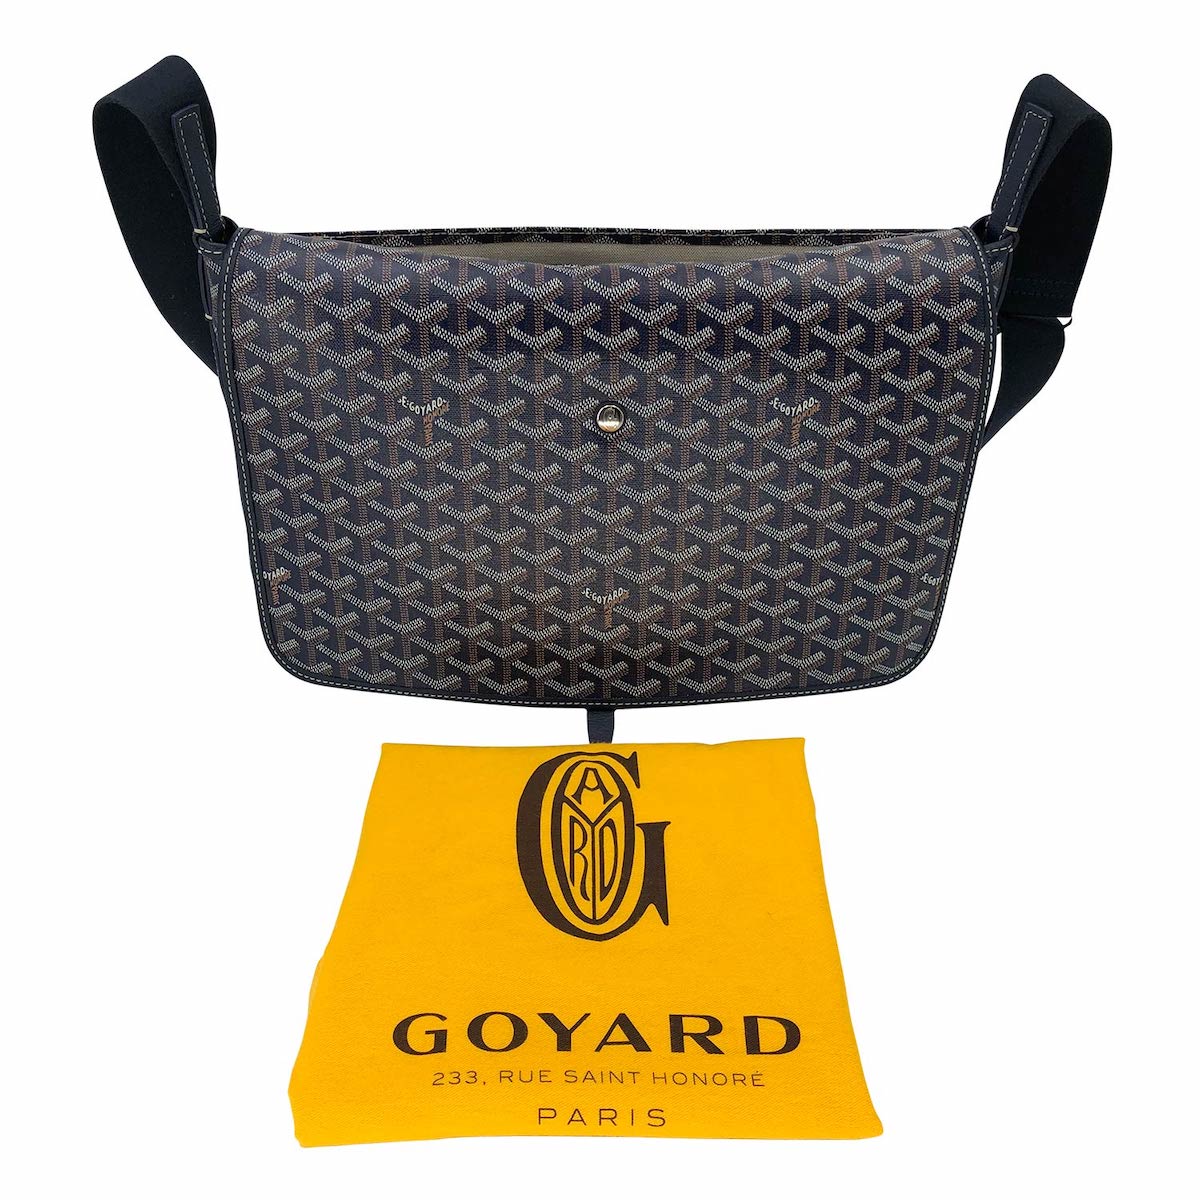 Maison Goyard - The Capétien messenger bag / Le sac messager Capétien